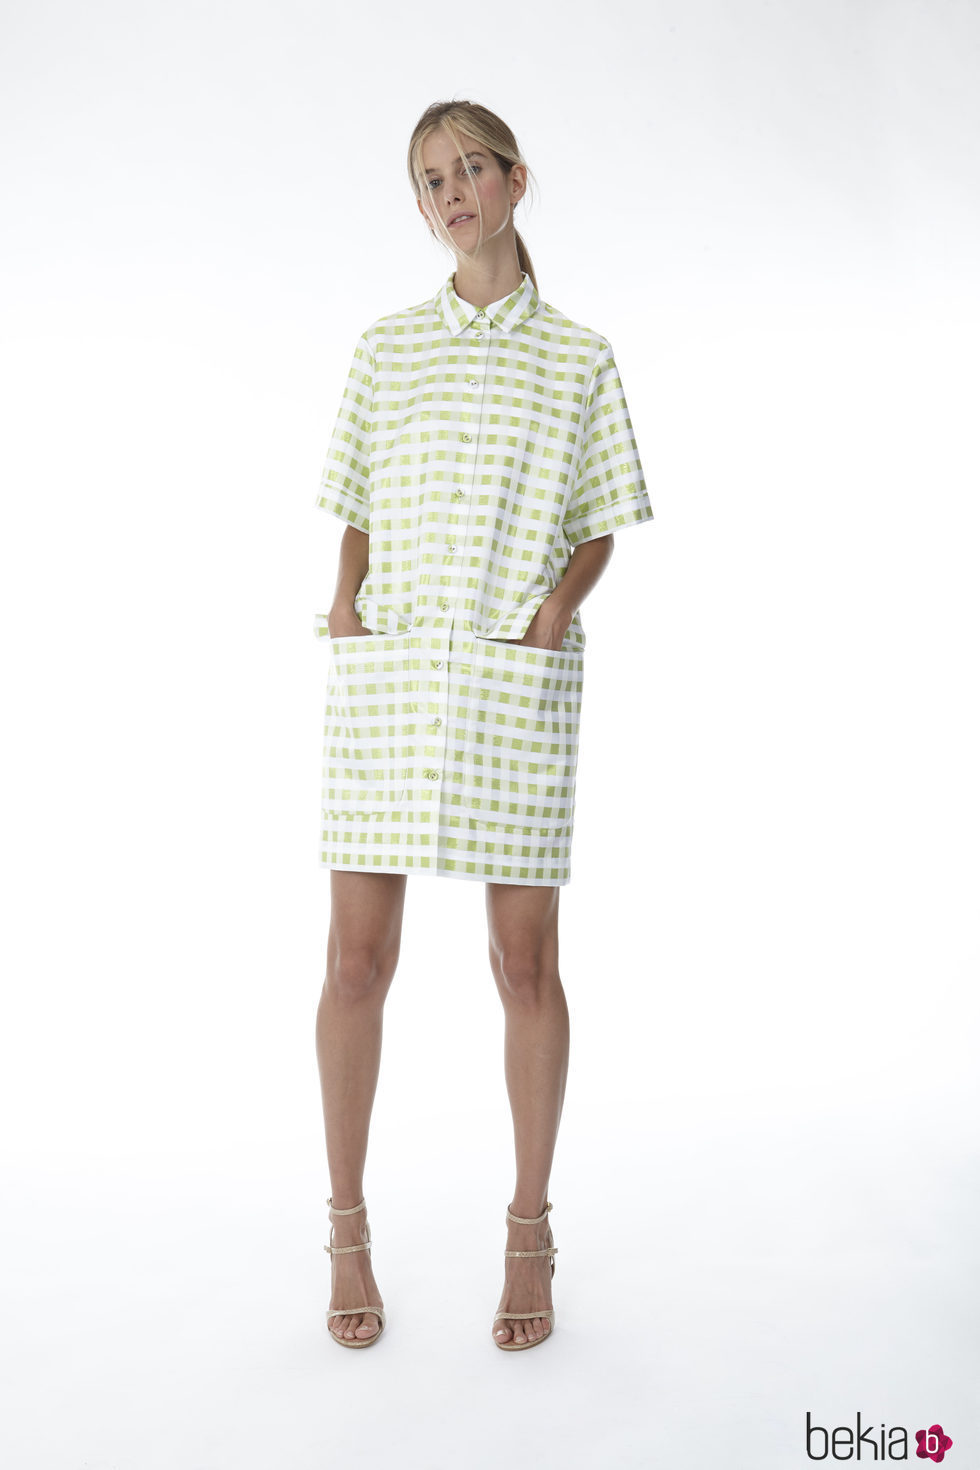 Vestido estilo camisa de cuadros vichy de la colección 'Resort 18' de '2ND LAB by The 2nd Skin Co'